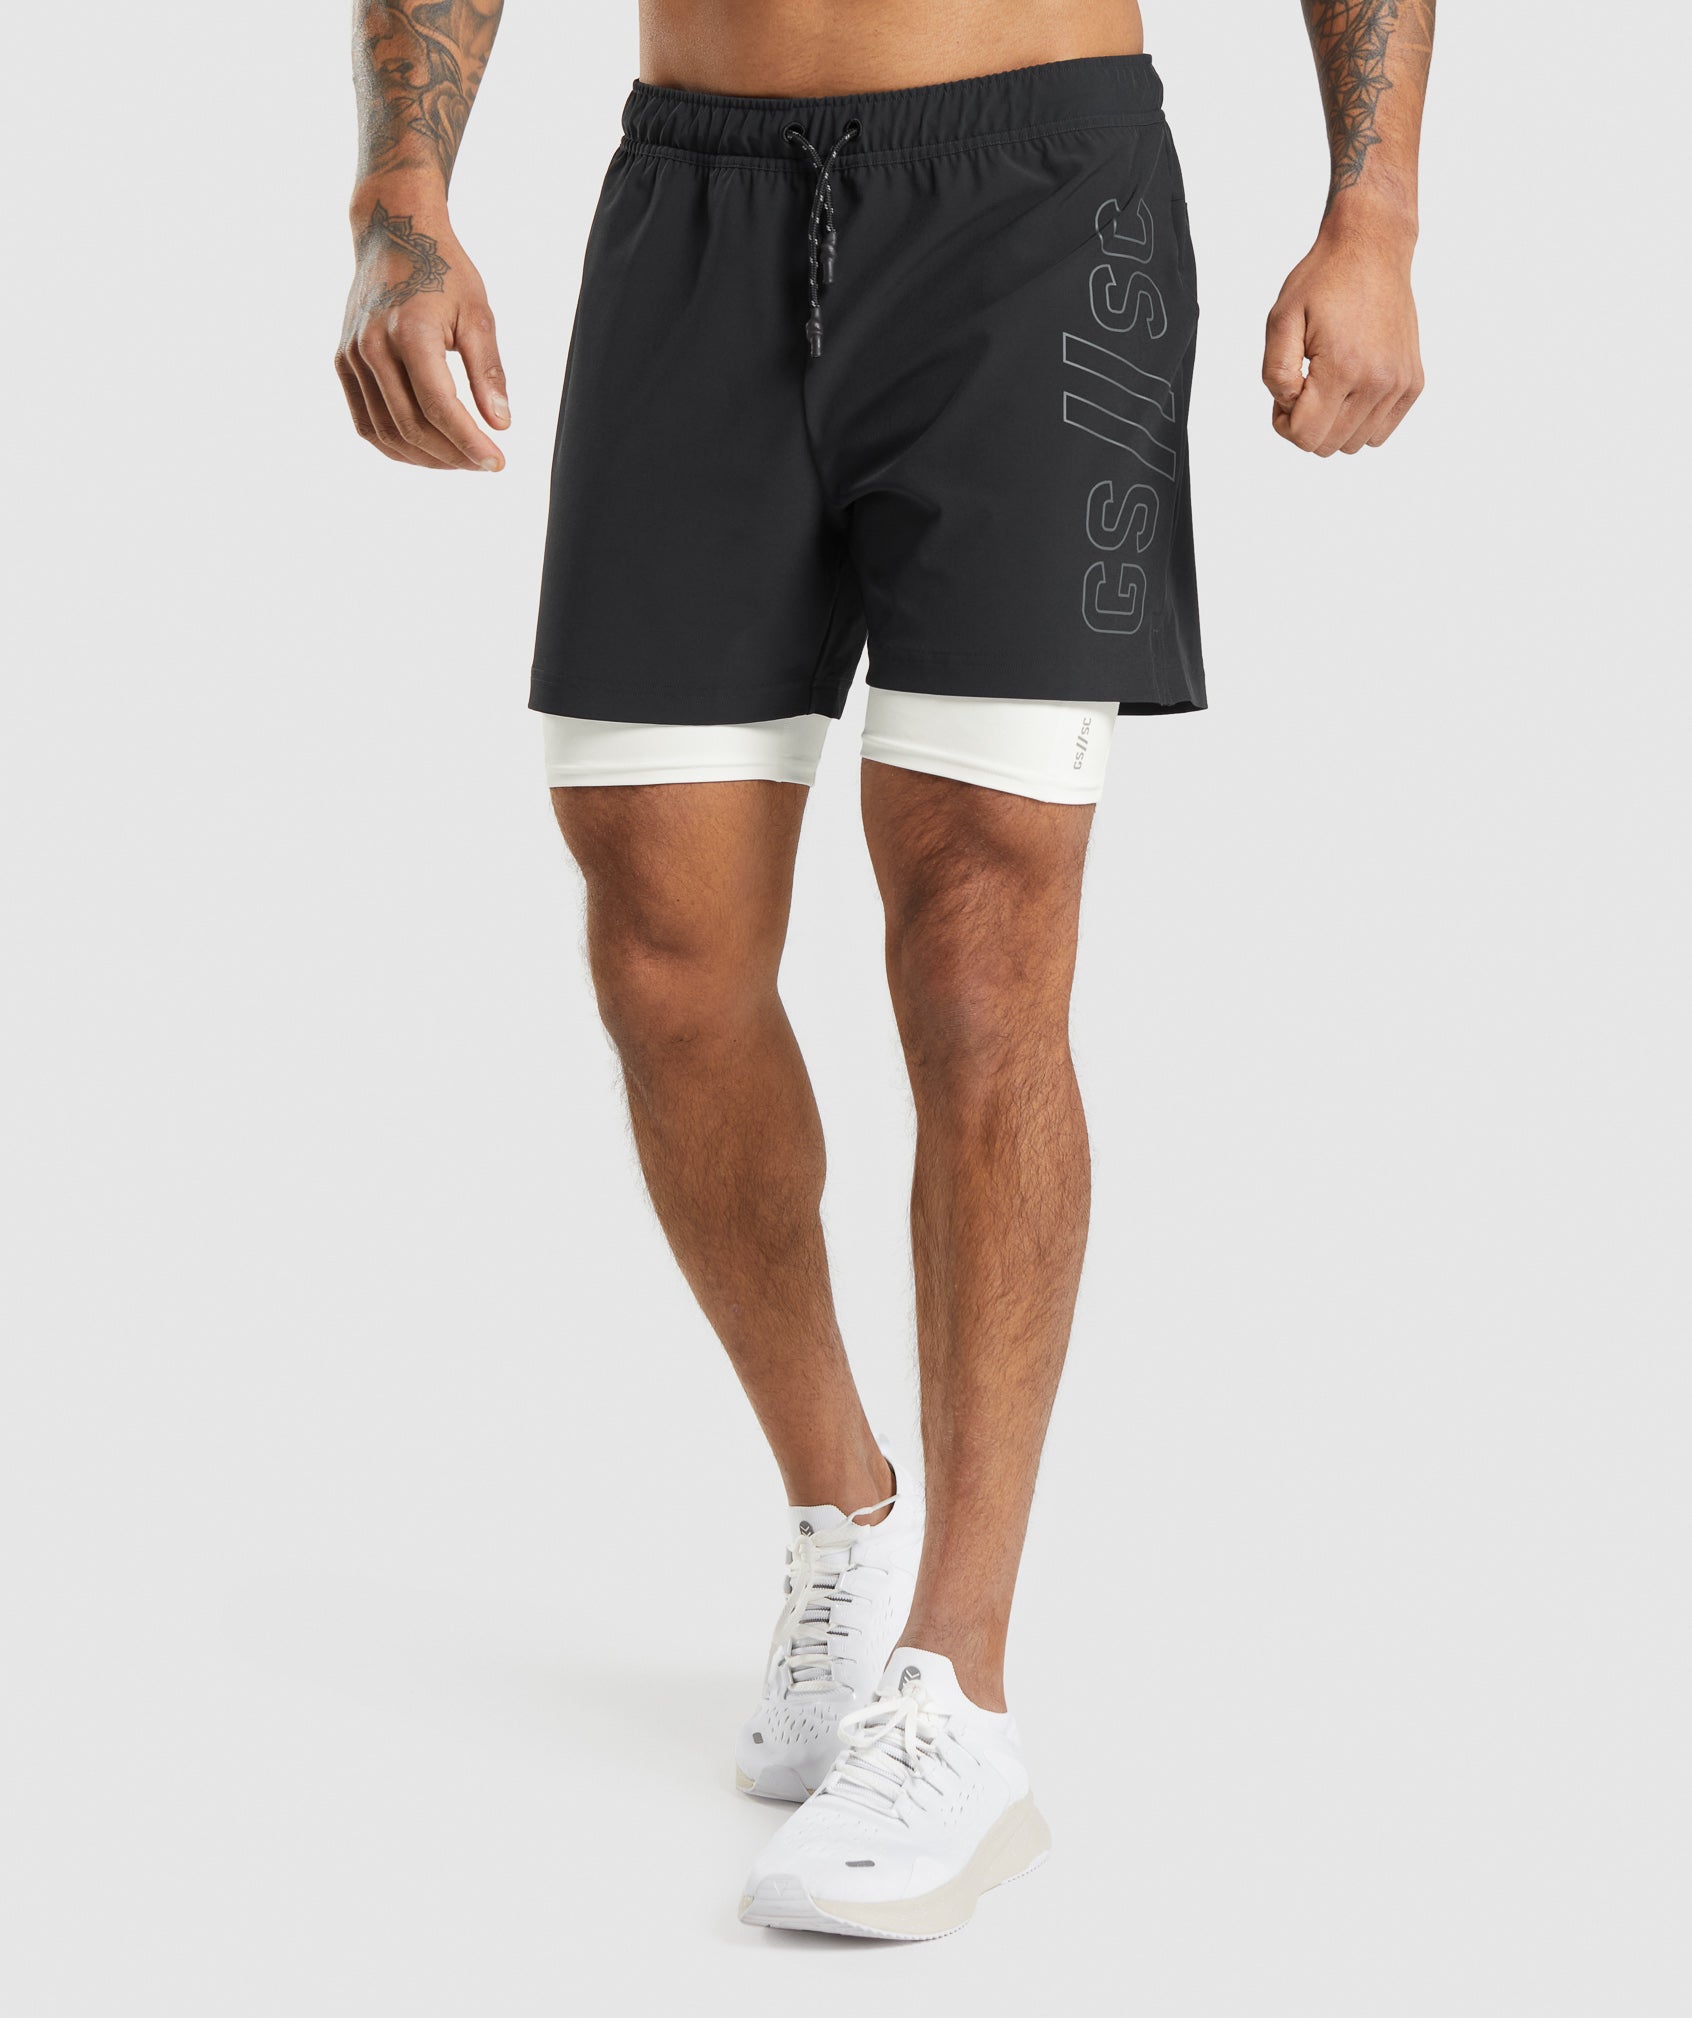 Gymshark//Steve Cook Ranger Shorts in Black - view 1